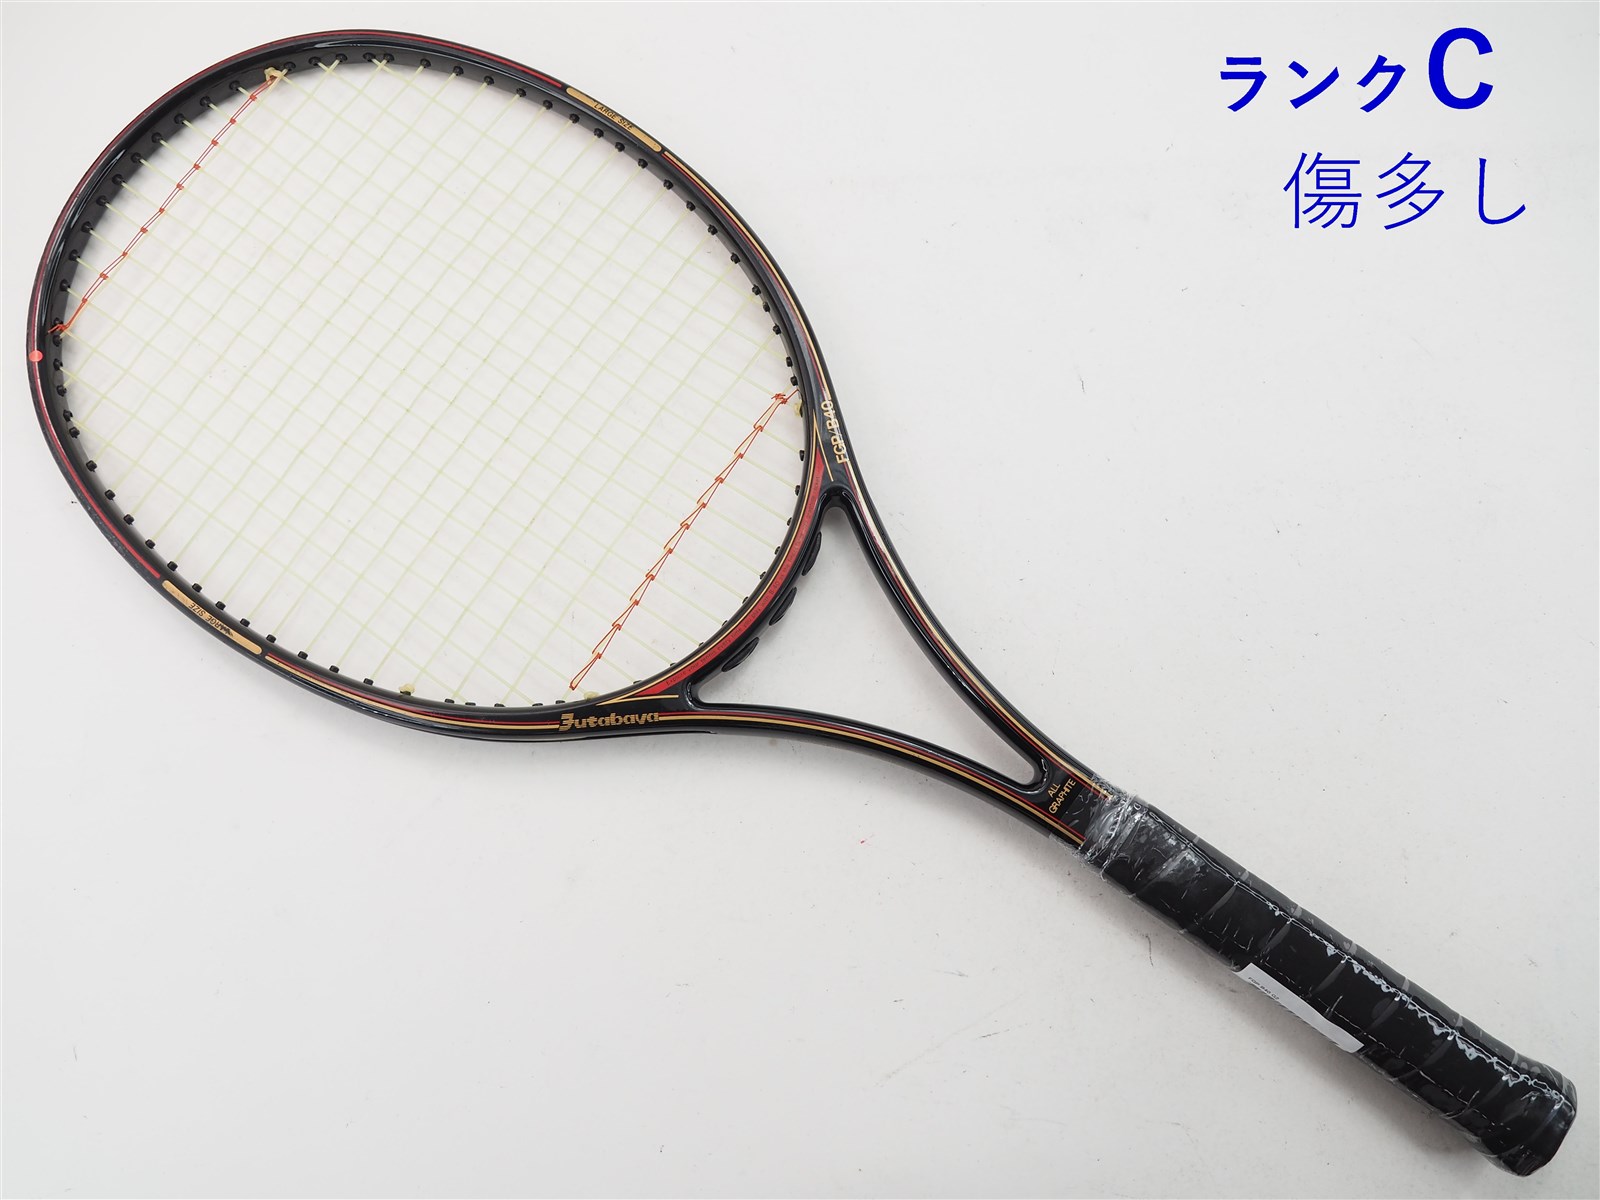 テニス ラケット FUTABAYA - ラケット(硬式用)